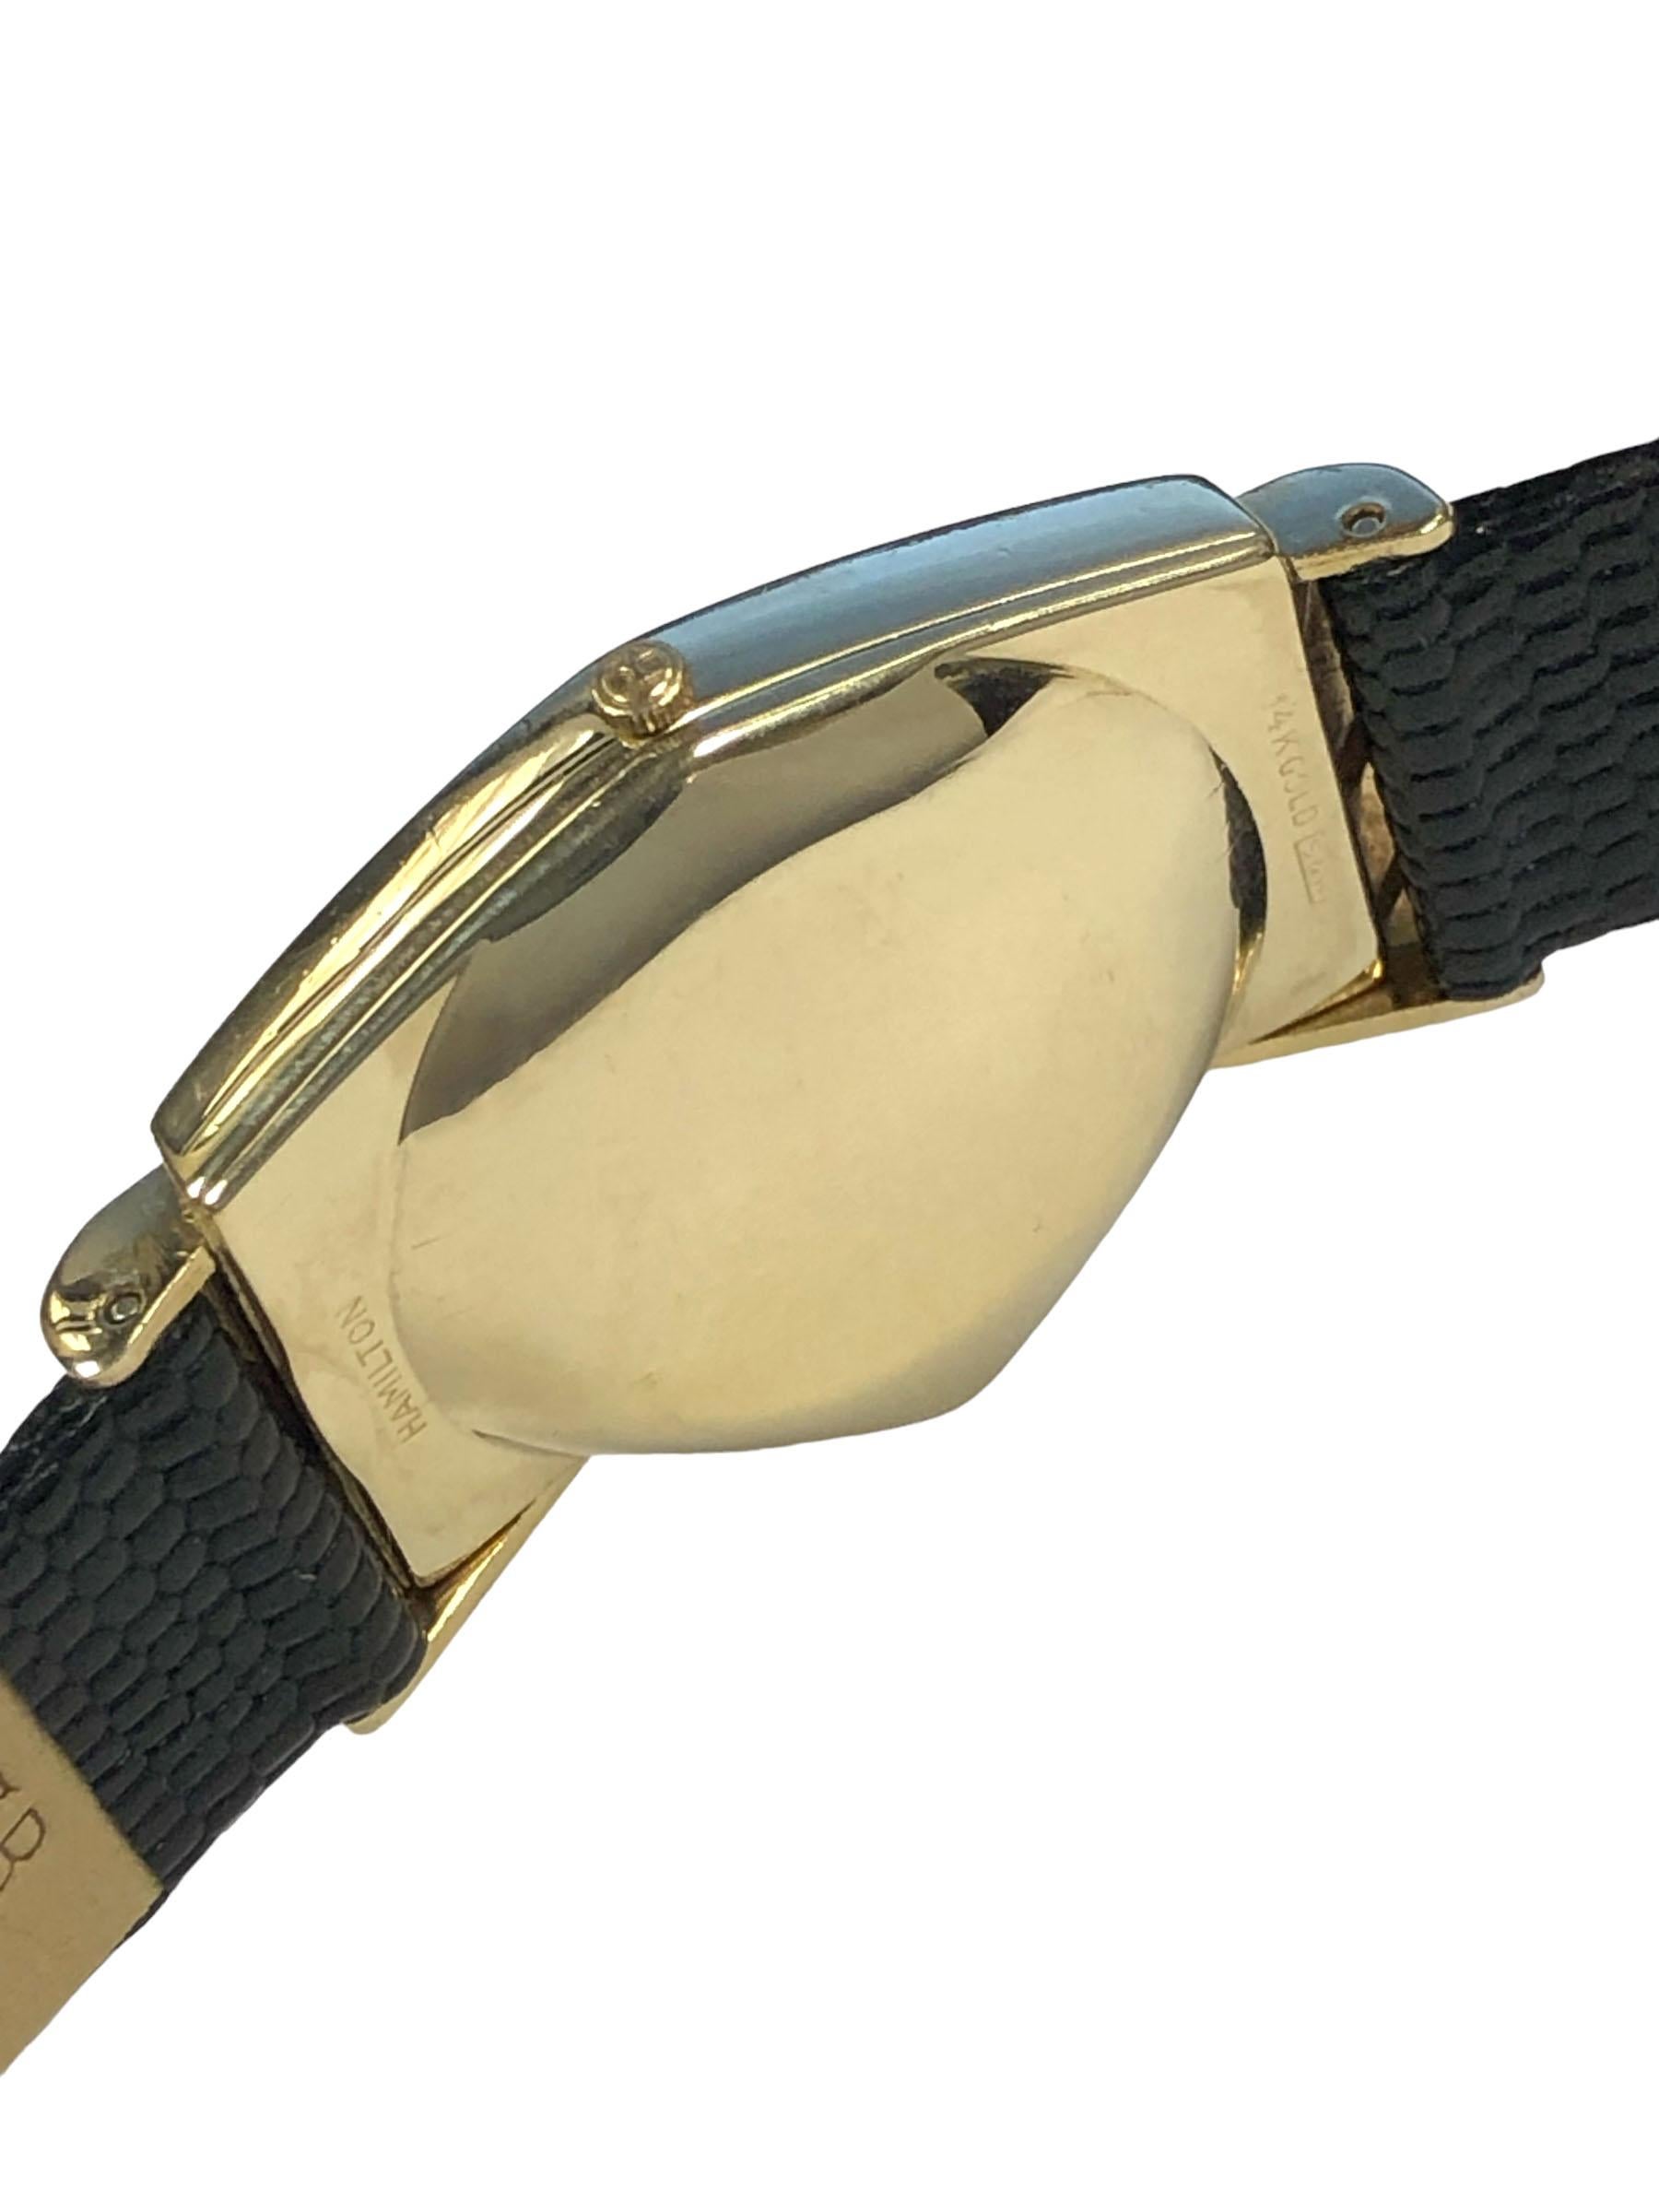 CIRCA 1960 Hamilton Electric Ventura Armbanduhr, 14k Gelbgold 2 Stück Fall, Hamilton 505 elektronische Bewegung, schwarzes Zifferblatt mit erhöhten goldenen Punkt Markierungen und ein Sweep Sekundenzeiger. New Black Lizard Maserung Armband, kommt